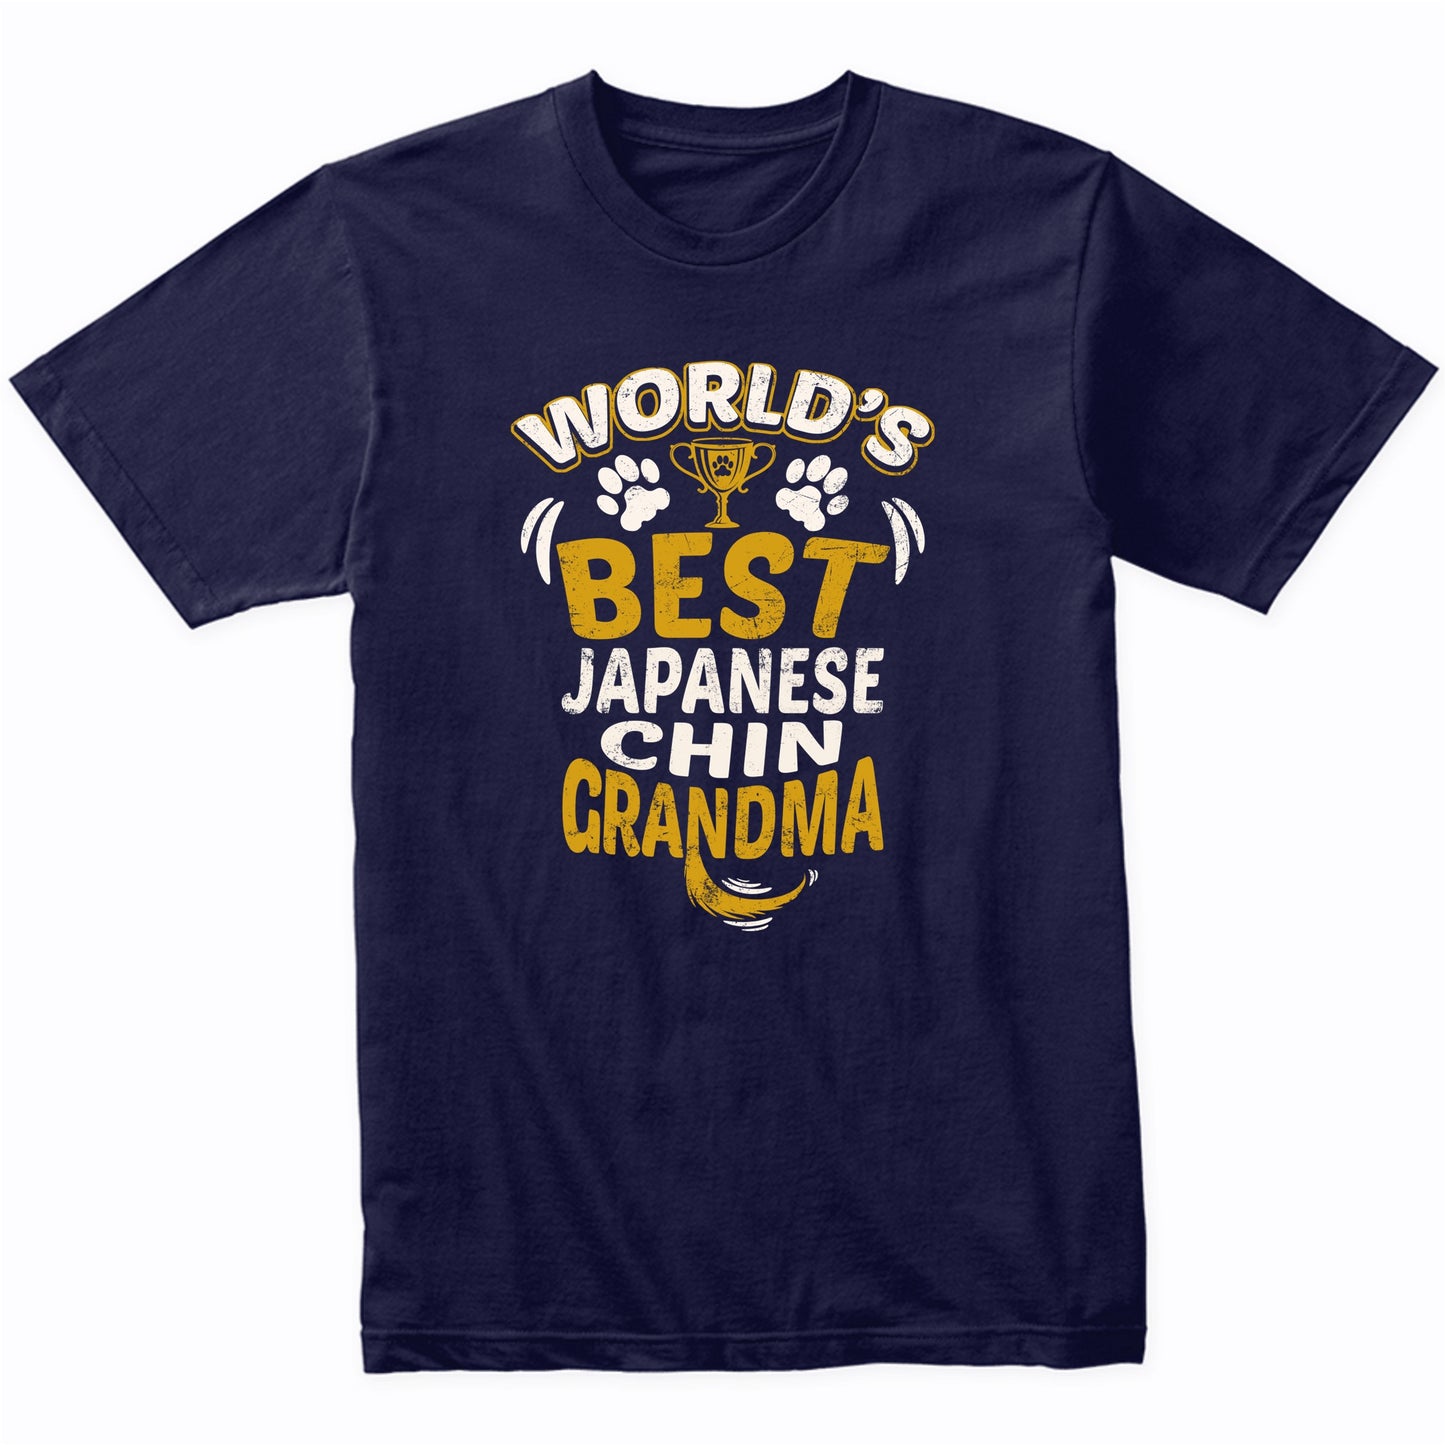 World's Best Japanese Chin Grandma Graphic T-Shirt